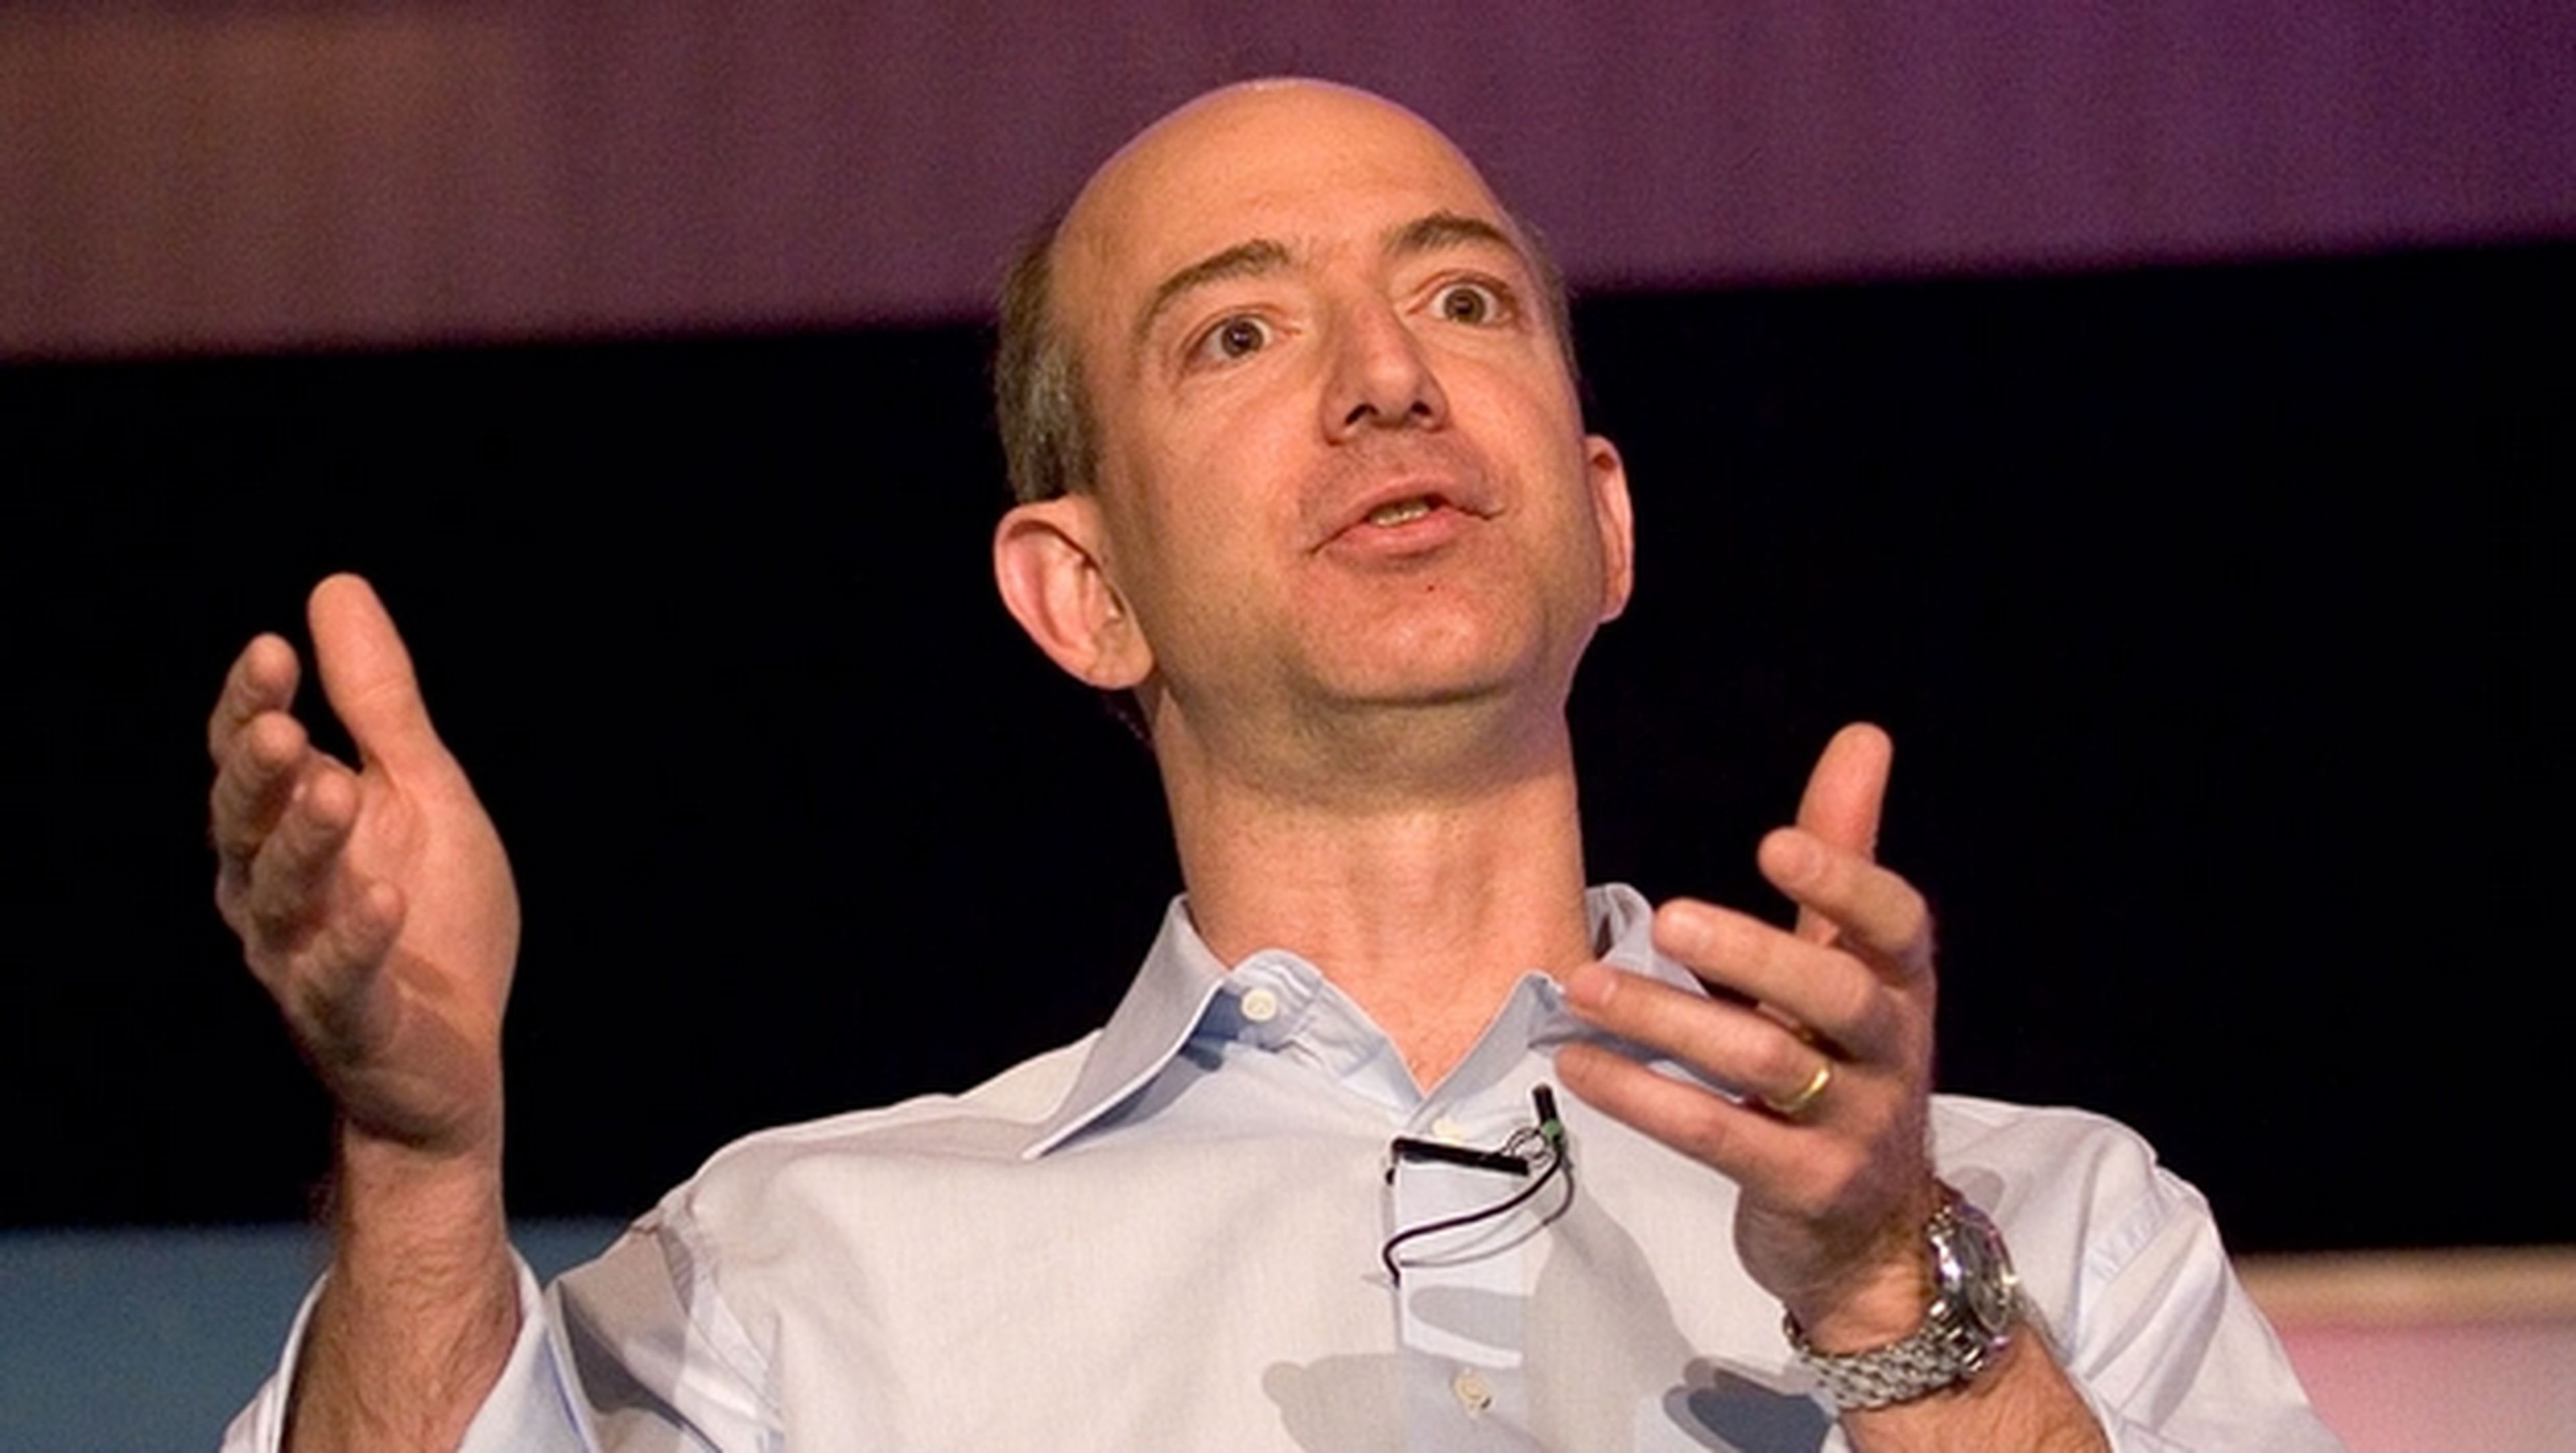 Jeff Bezos, fundador de Amazon, evacuado en helicóptero por la marina ecuatoriana tras sufrir un cálculo renal